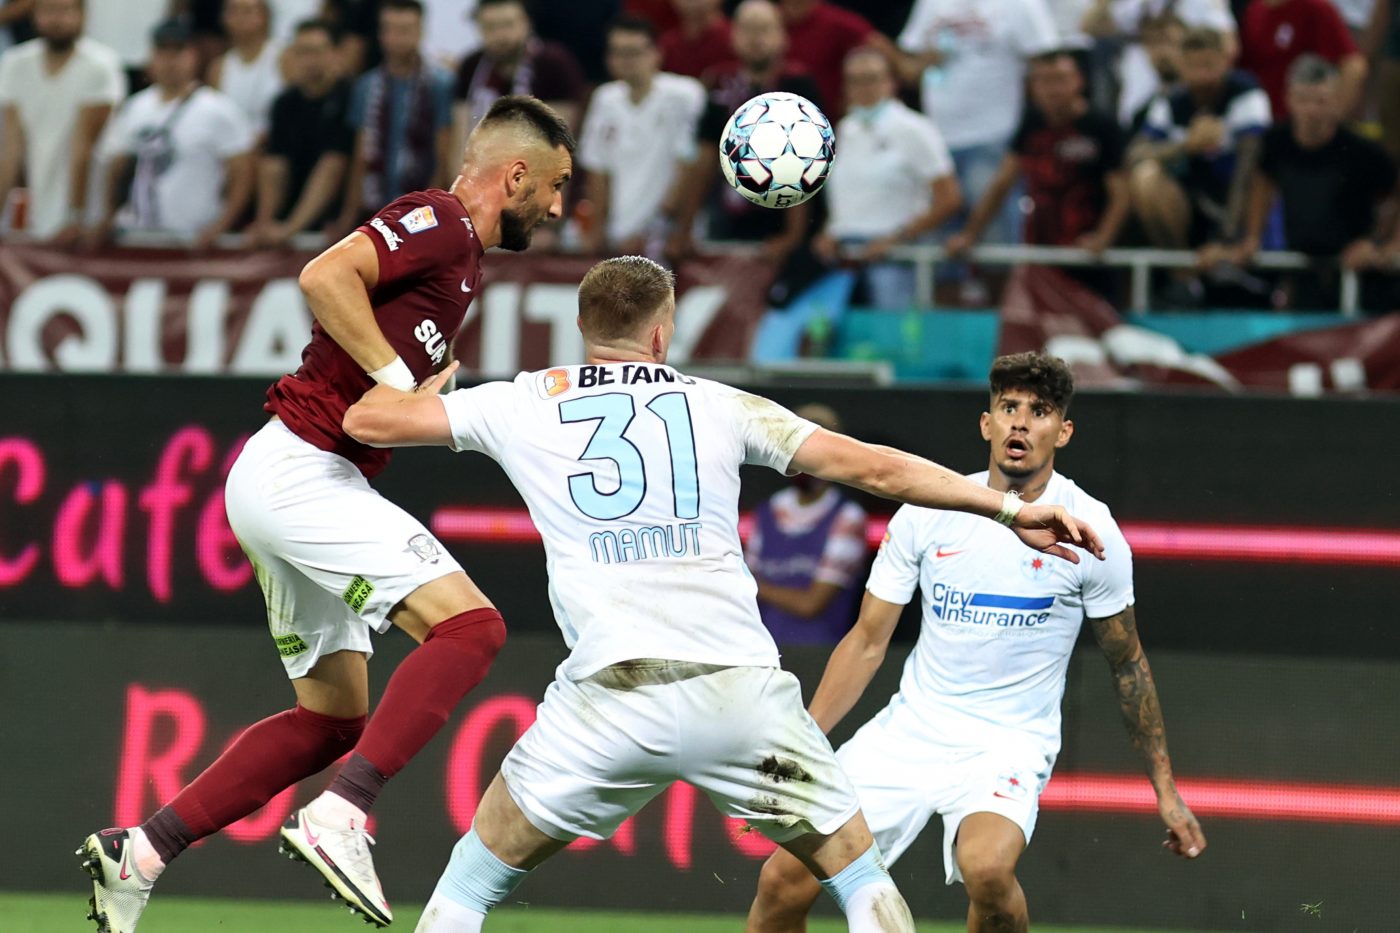 Florin Răducioiu a „mirosit” ceva neobișnuit în meciul FCSB - Hermannstadt  3-0, disputat la câteva zile după ce Gigi Becali l-a cumpărat pe Baba  Alhassan